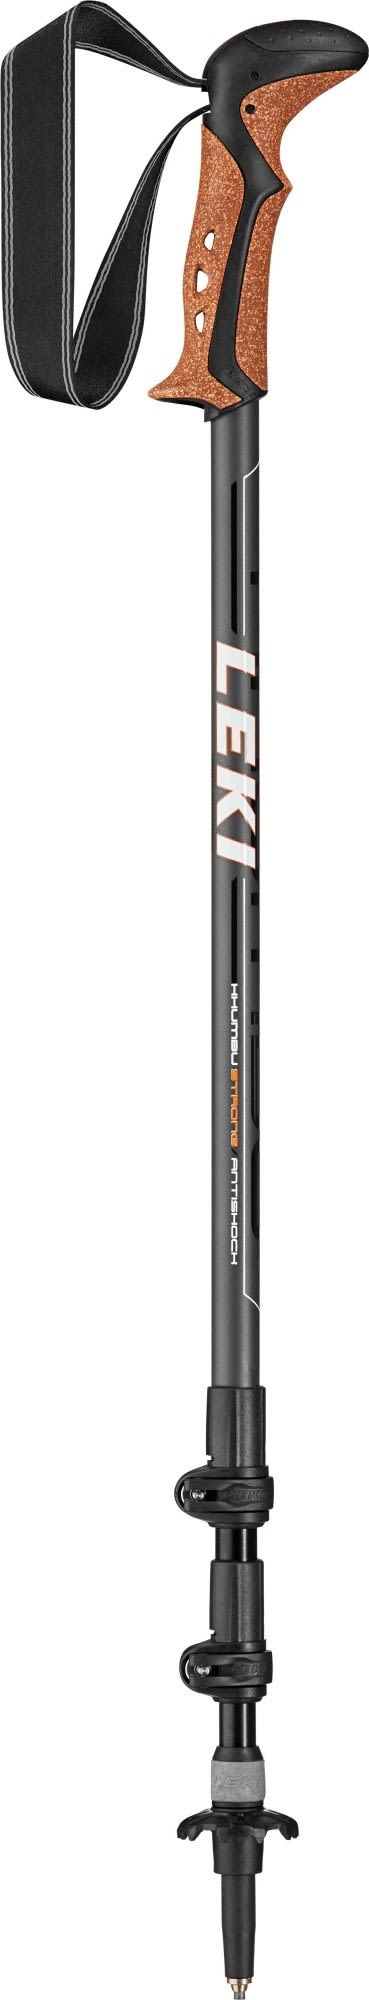 Leki Stabiler verstellbarer Aluminium Trekkingstock Grey - Black - White - Orange